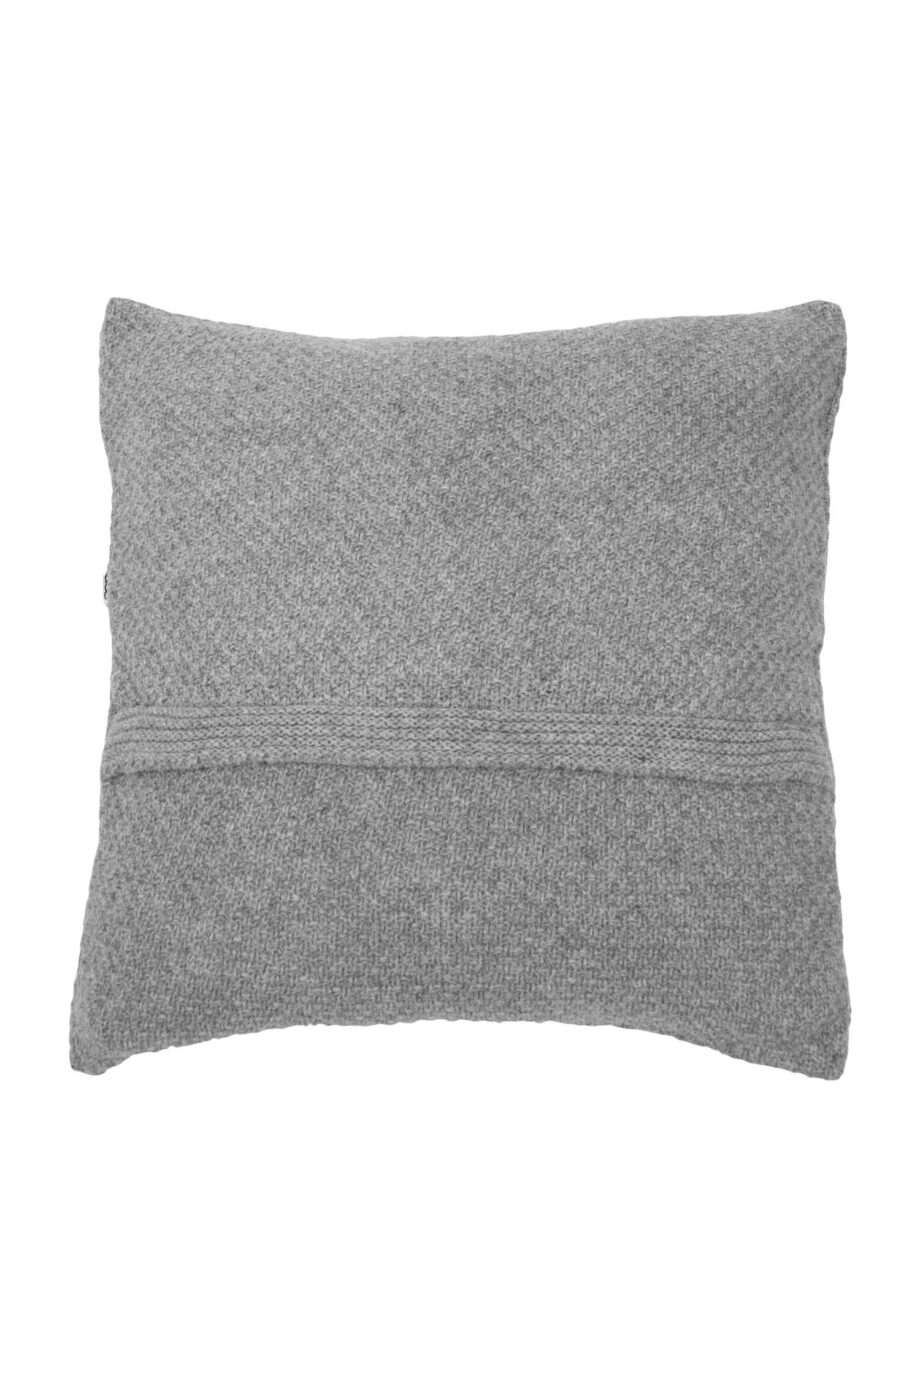 rice light grey knitted woolen pillowcase xsmall